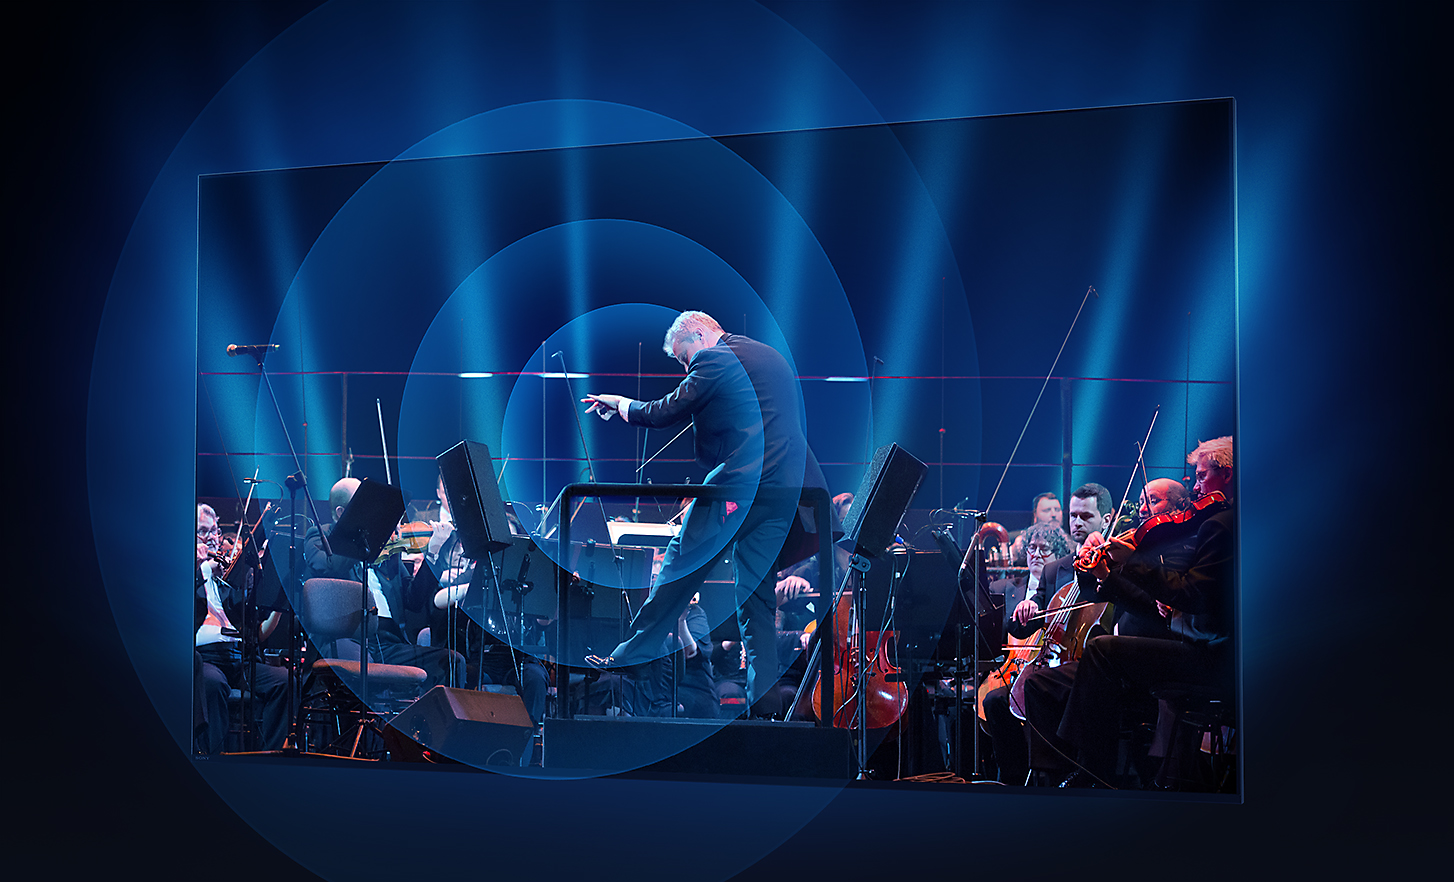 Ecranul unui televizor BRAVIA prezentând dirijorul și orchestra, cu unde de sunet emise în cercuri concentrice din centrul ecranului